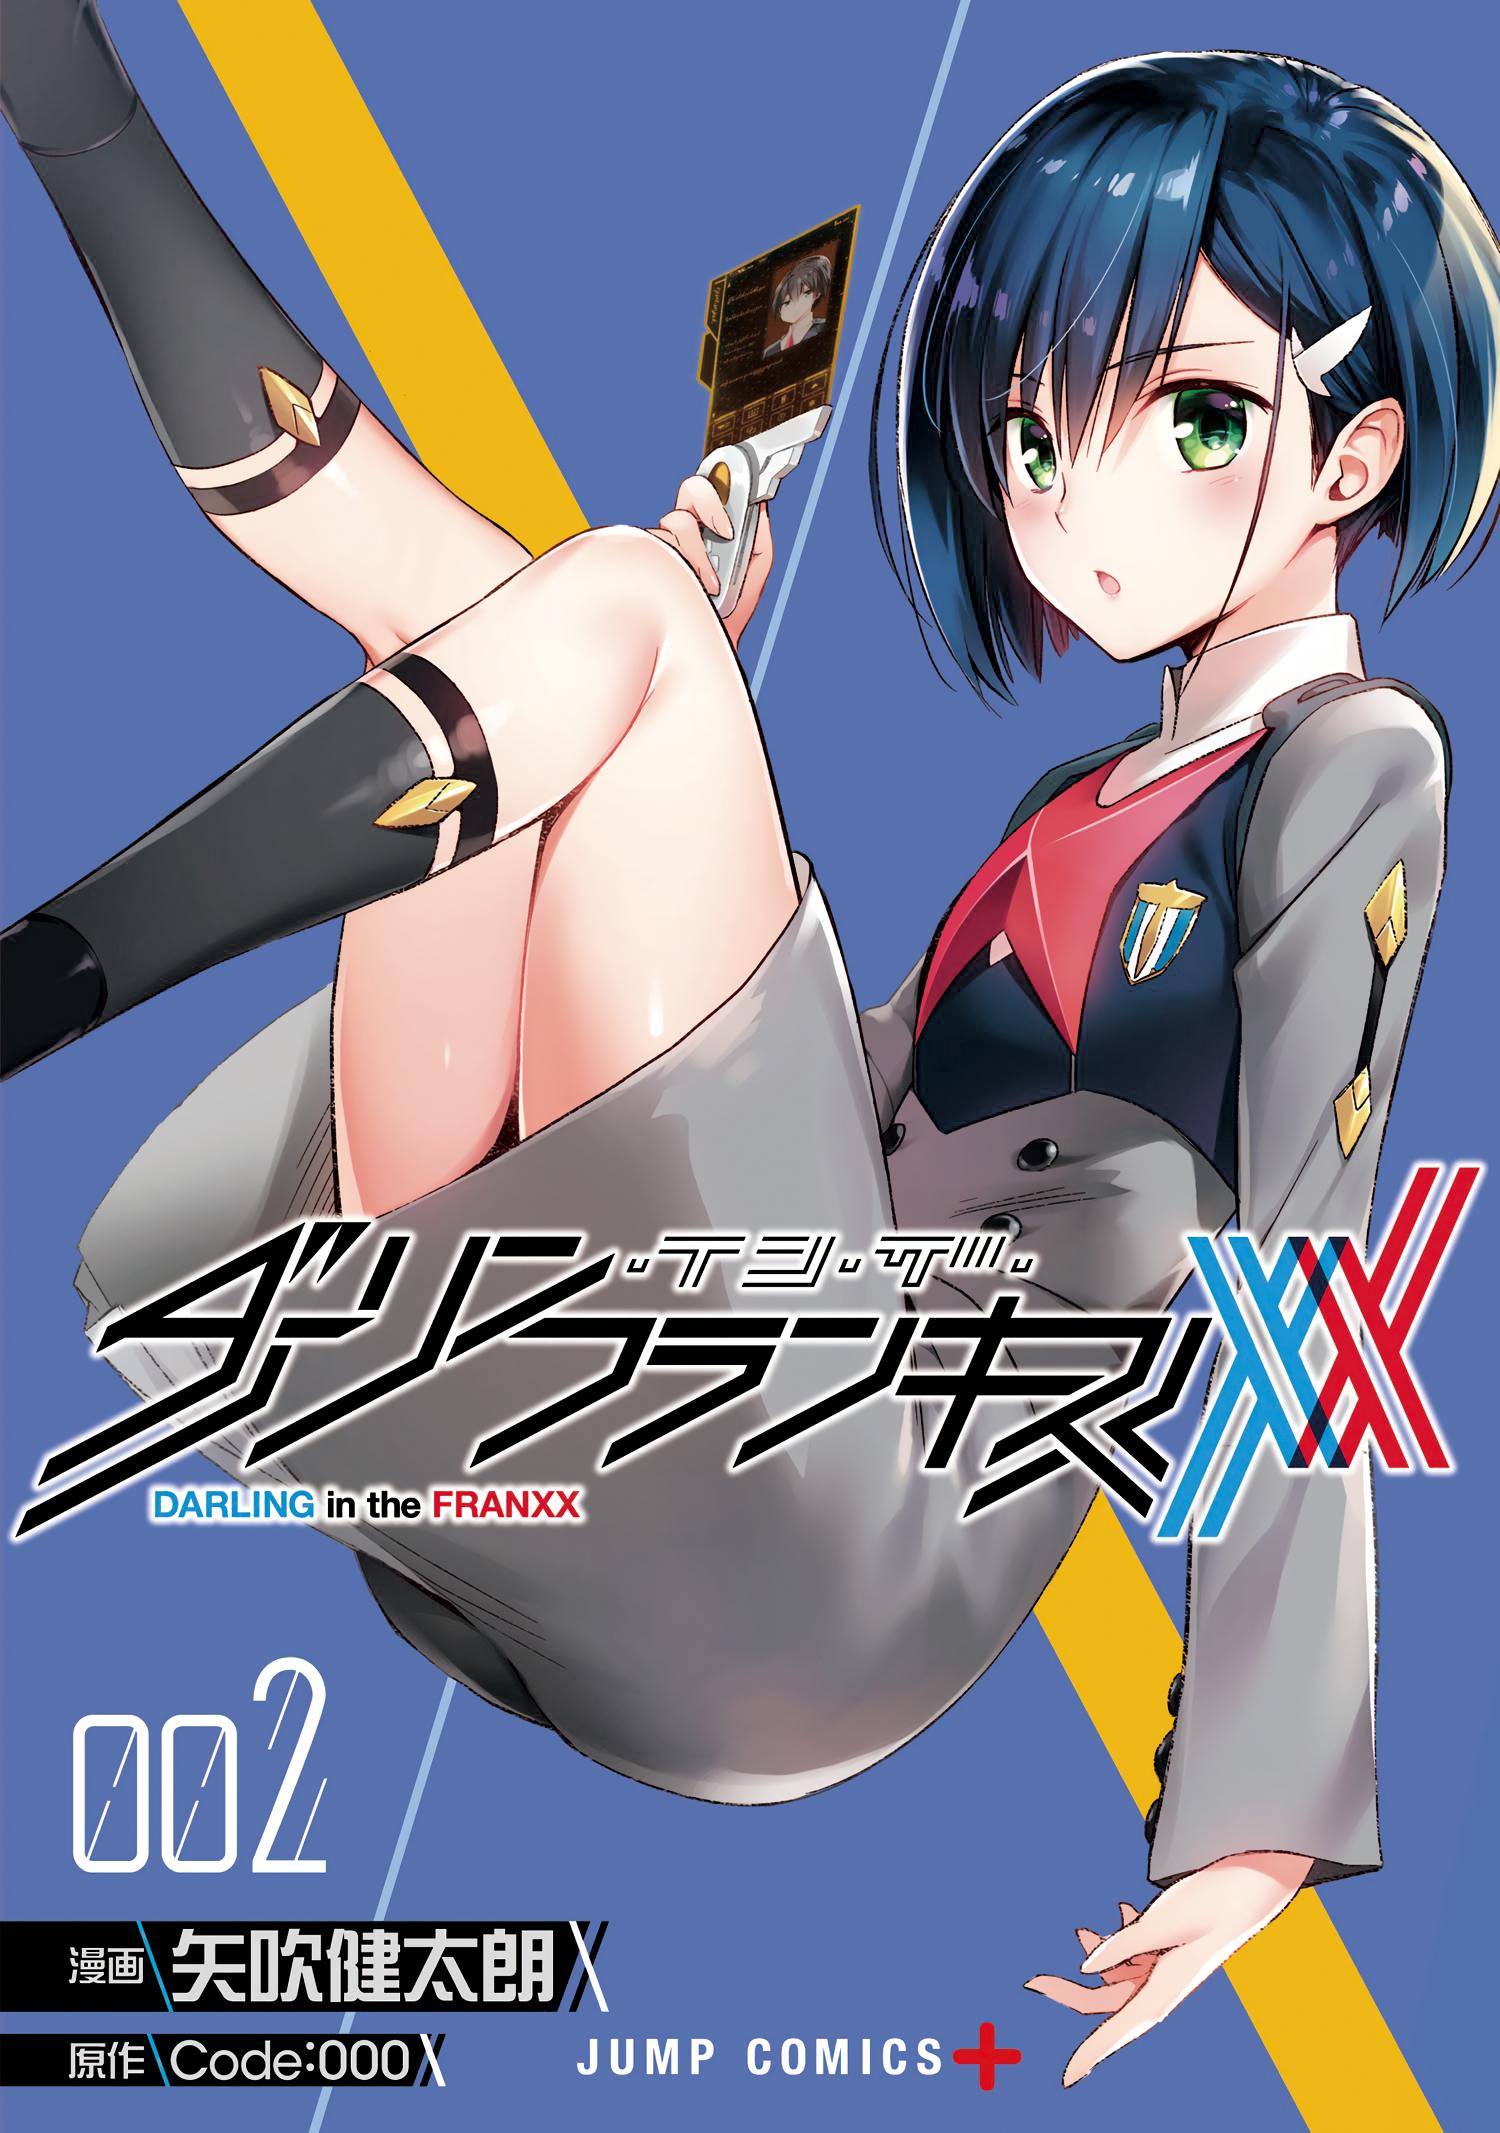 DARLING in the FRANXX Manga Volume 2, DARLING in the FRANXX Wiki